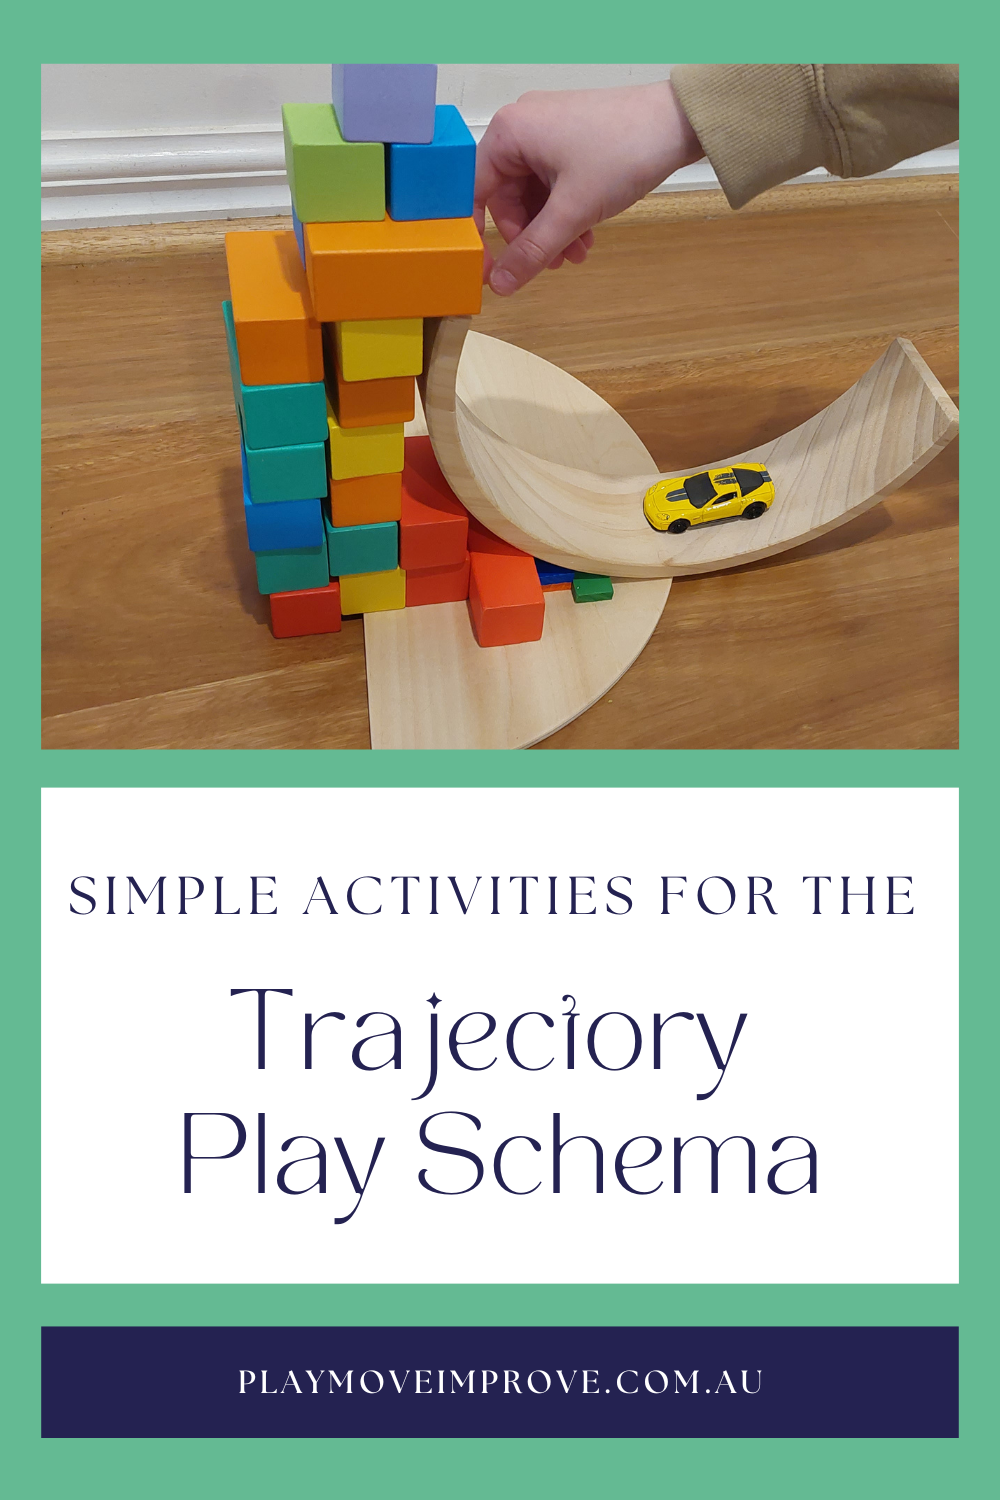 Trajectory play schema activities for children's development